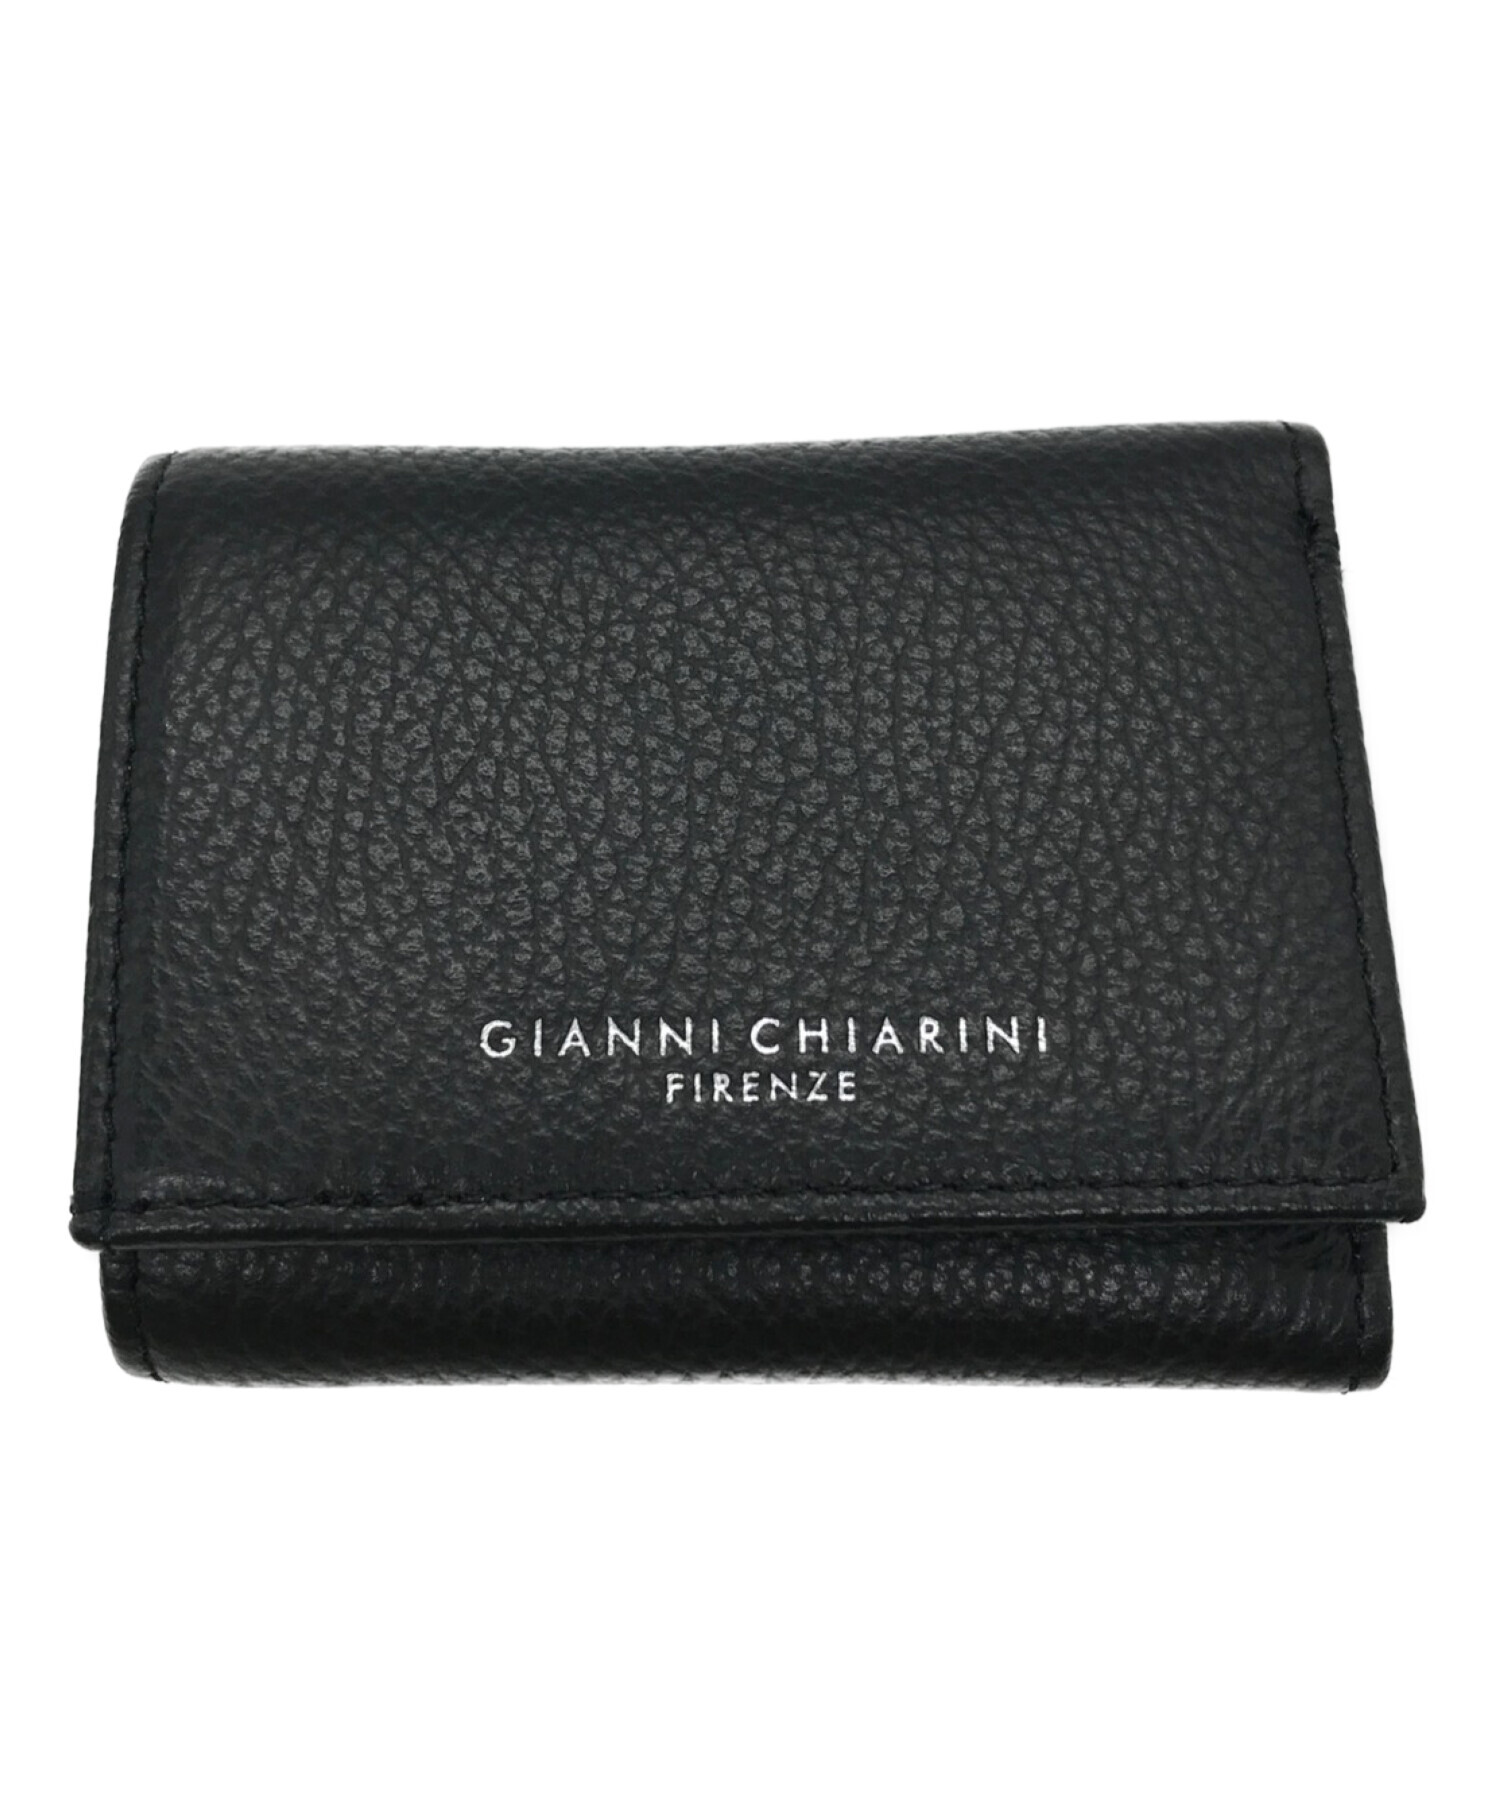 GIANNI CHIARINI (ジャンニキアリーニ) 3つ折り財布 ブラック